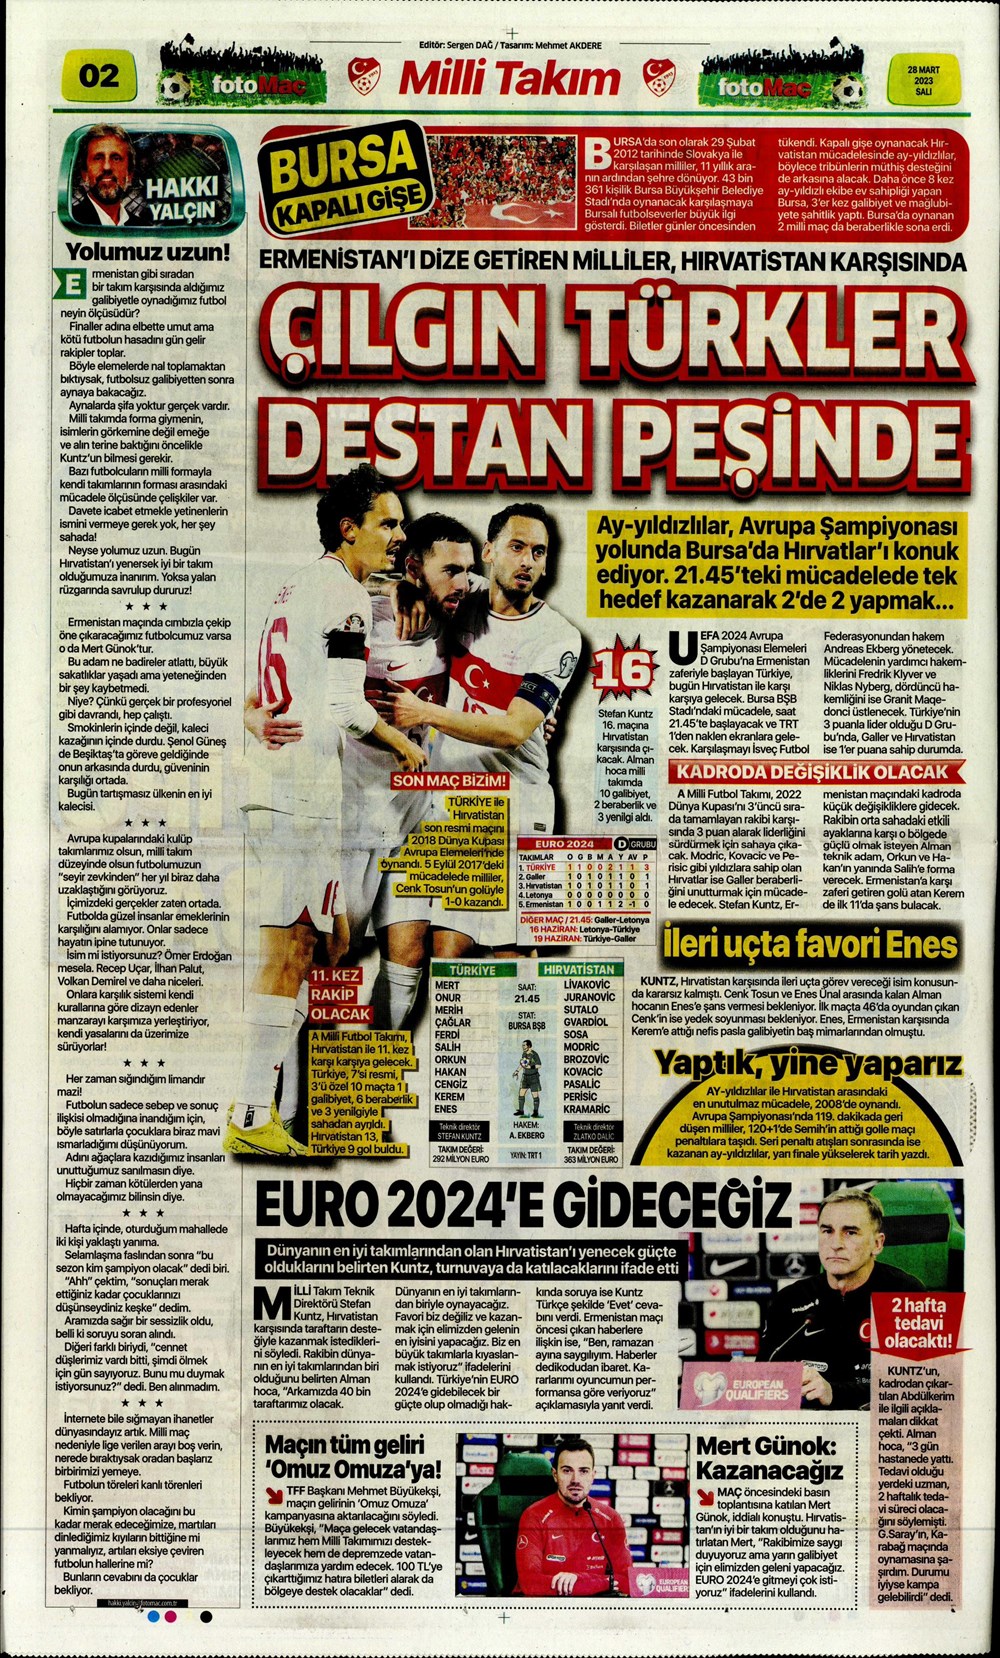 "Vurduğumuz gol olsun" - Sporun manşetleri - 12. Foto